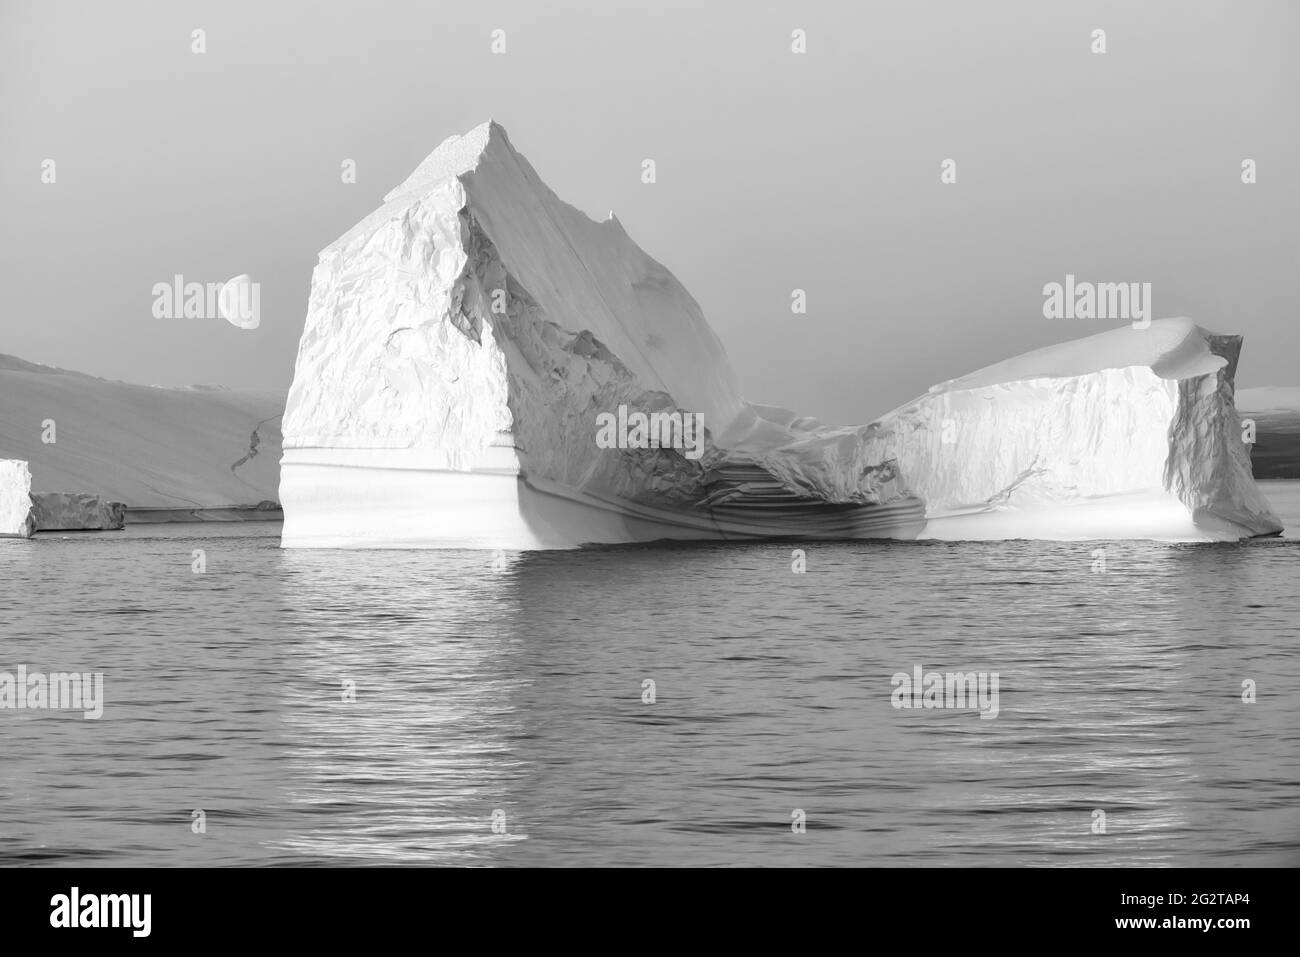 Photo en noir et blanc d'un énorme iceberg flottant au crépuscule avec la lune à gauche. Scoresby Sund, Kangertittitaq, Groenland, Danemark Banque D'Images